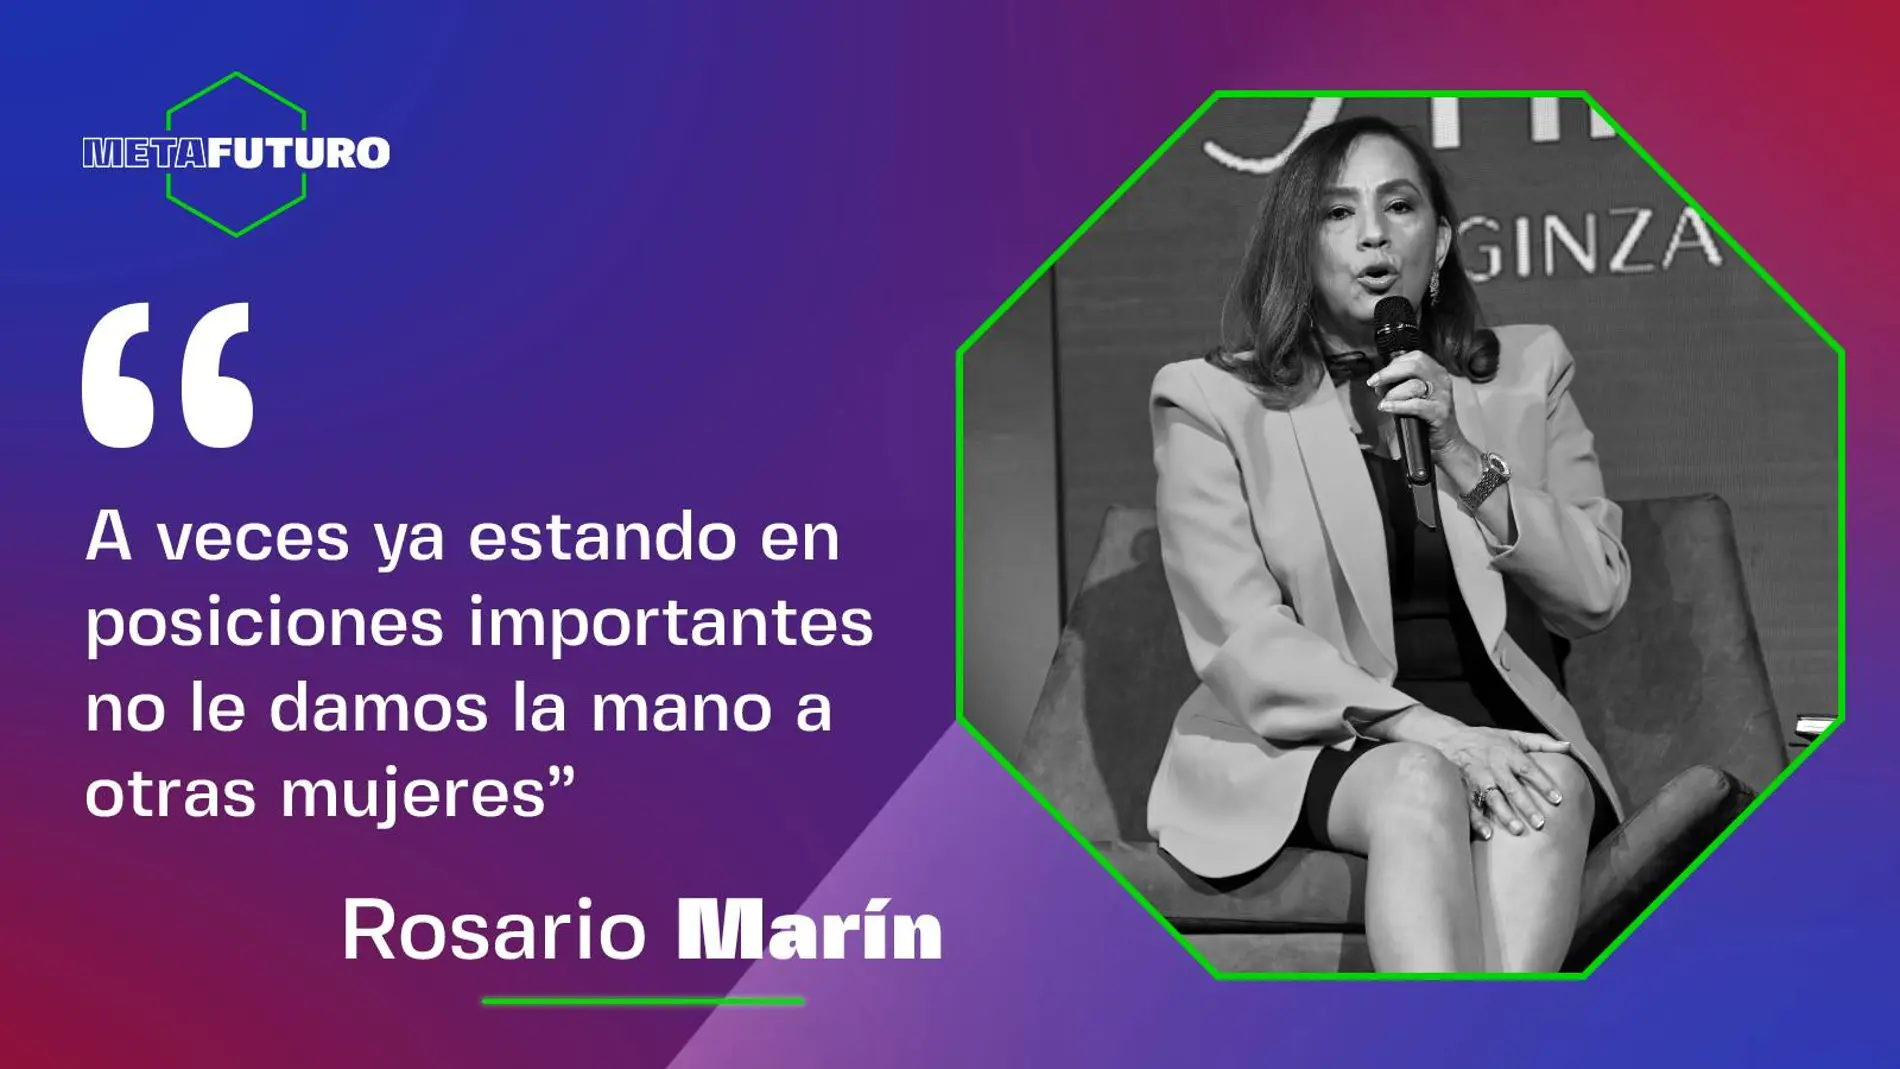 Rosario Marín: "A veces ya estando en posiciones importantes no le damos la mano a otras mujeres"